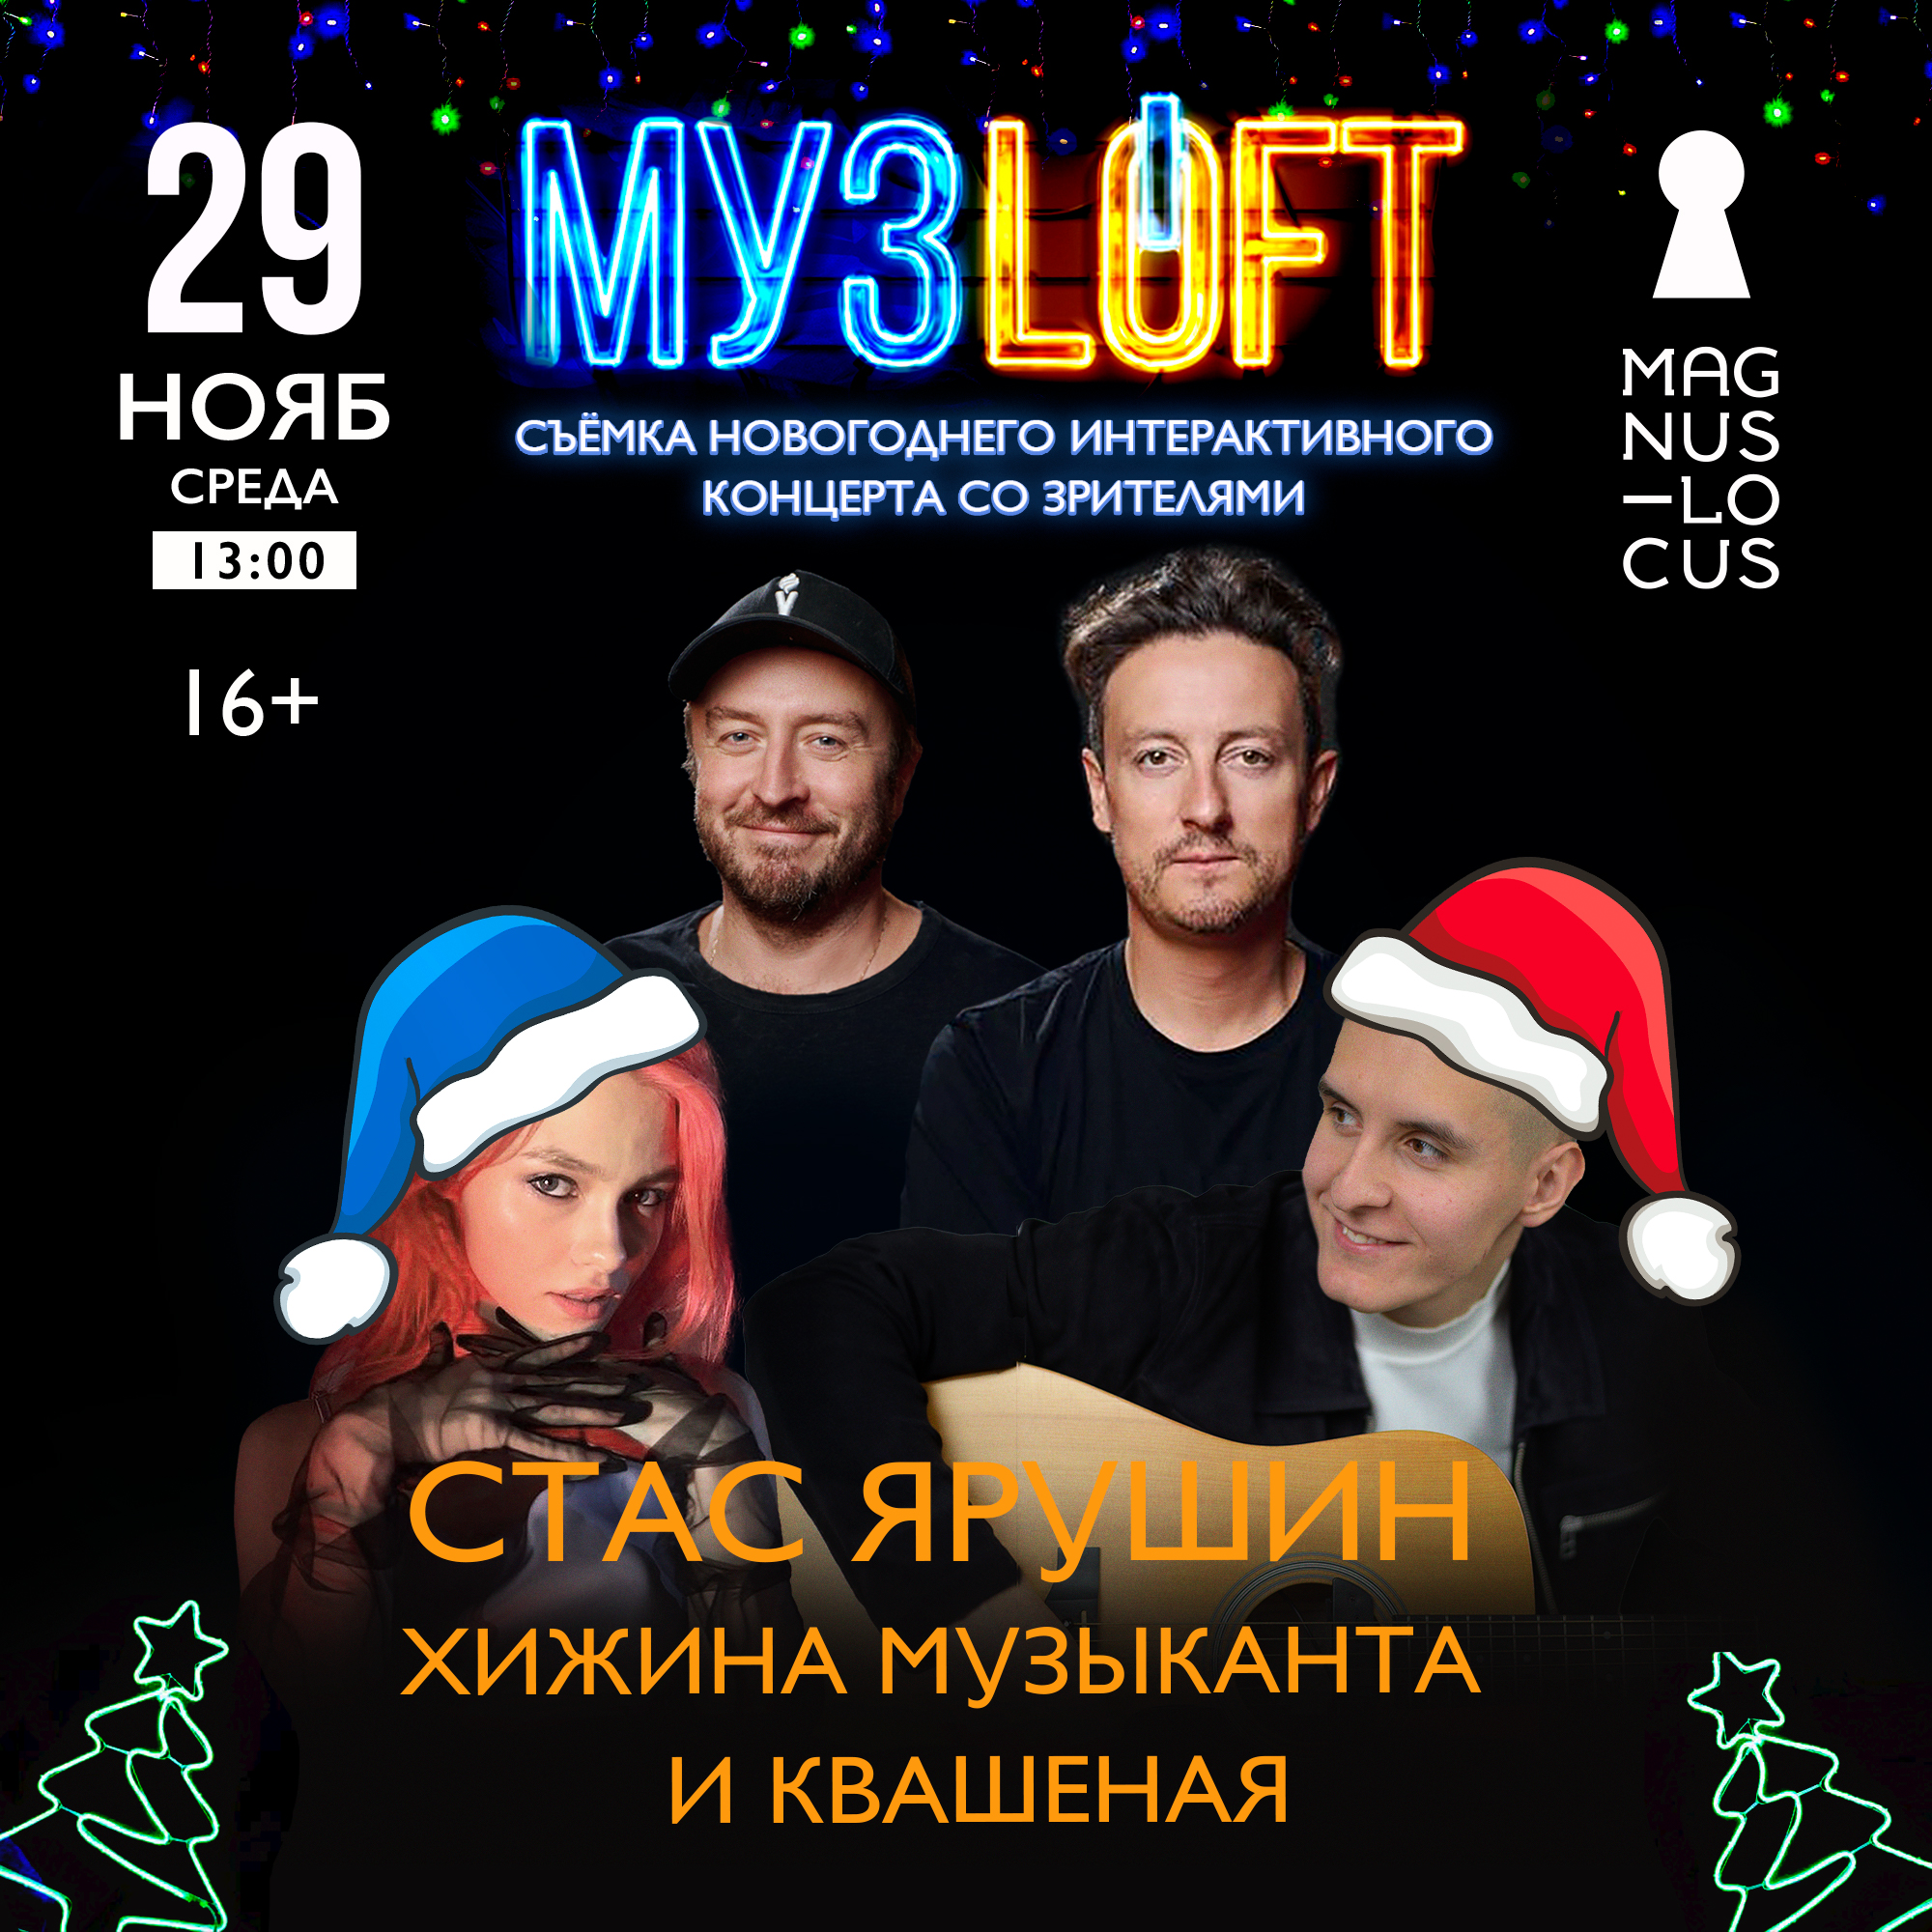 Новогодний концерт-съемка «МУЗLOFT» c Хижиной Музыканта и Квашеной